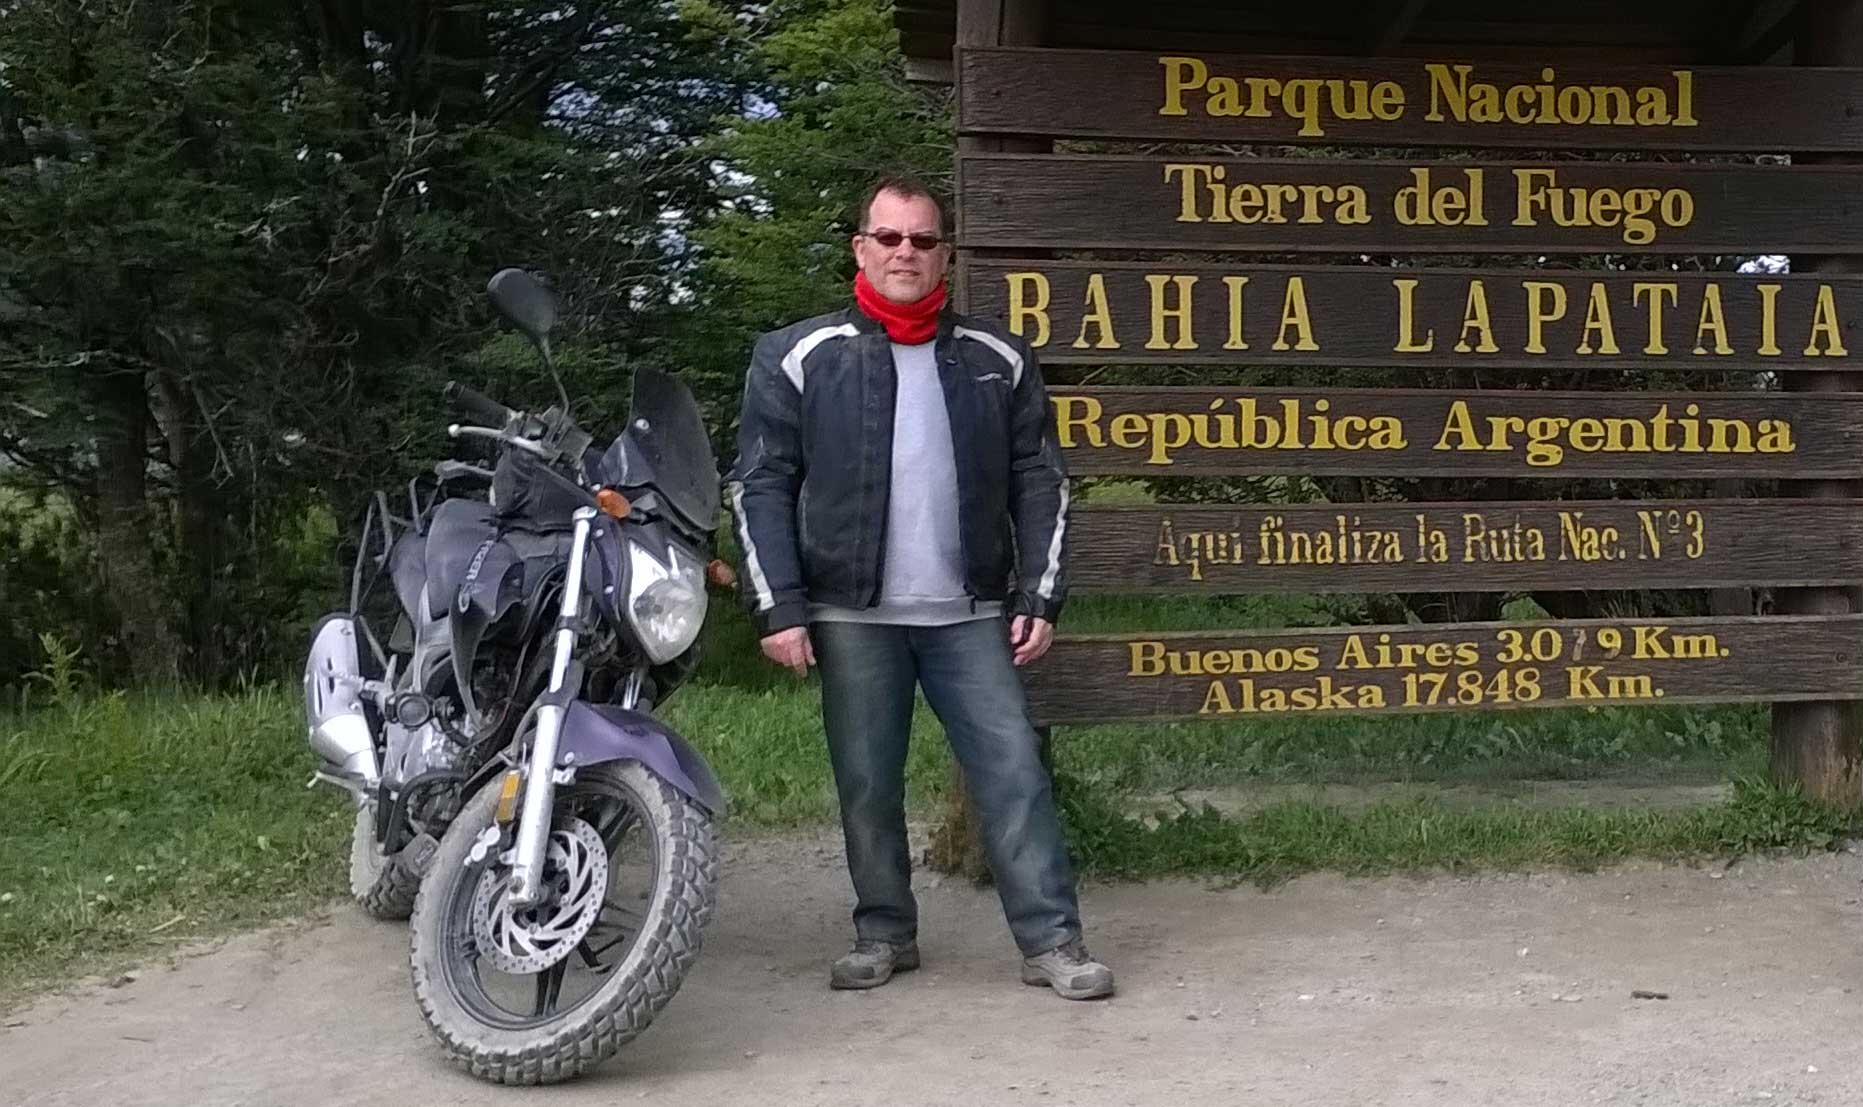 Crónicas de motoviajero - Final de la ruta nacional 3 en Bahía Lapataia - Ushuaia - Yamaha Fazer YS 250